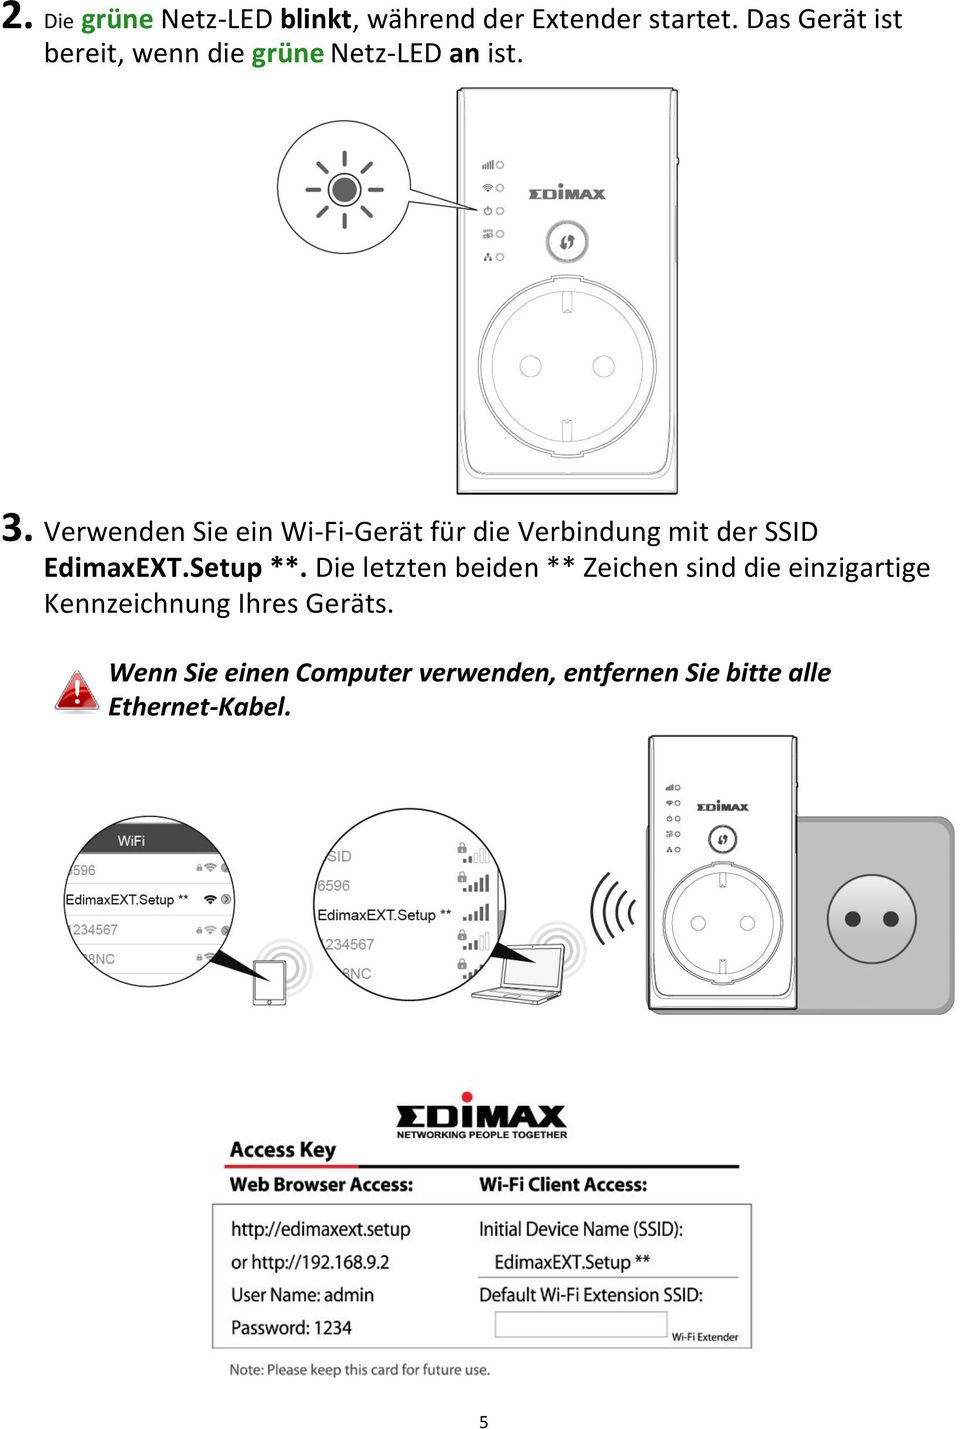 Verwenden Sie ein Wi-Fi-Gerät für die Verbindung mit der SSID EdimaxEXT.Setup **.